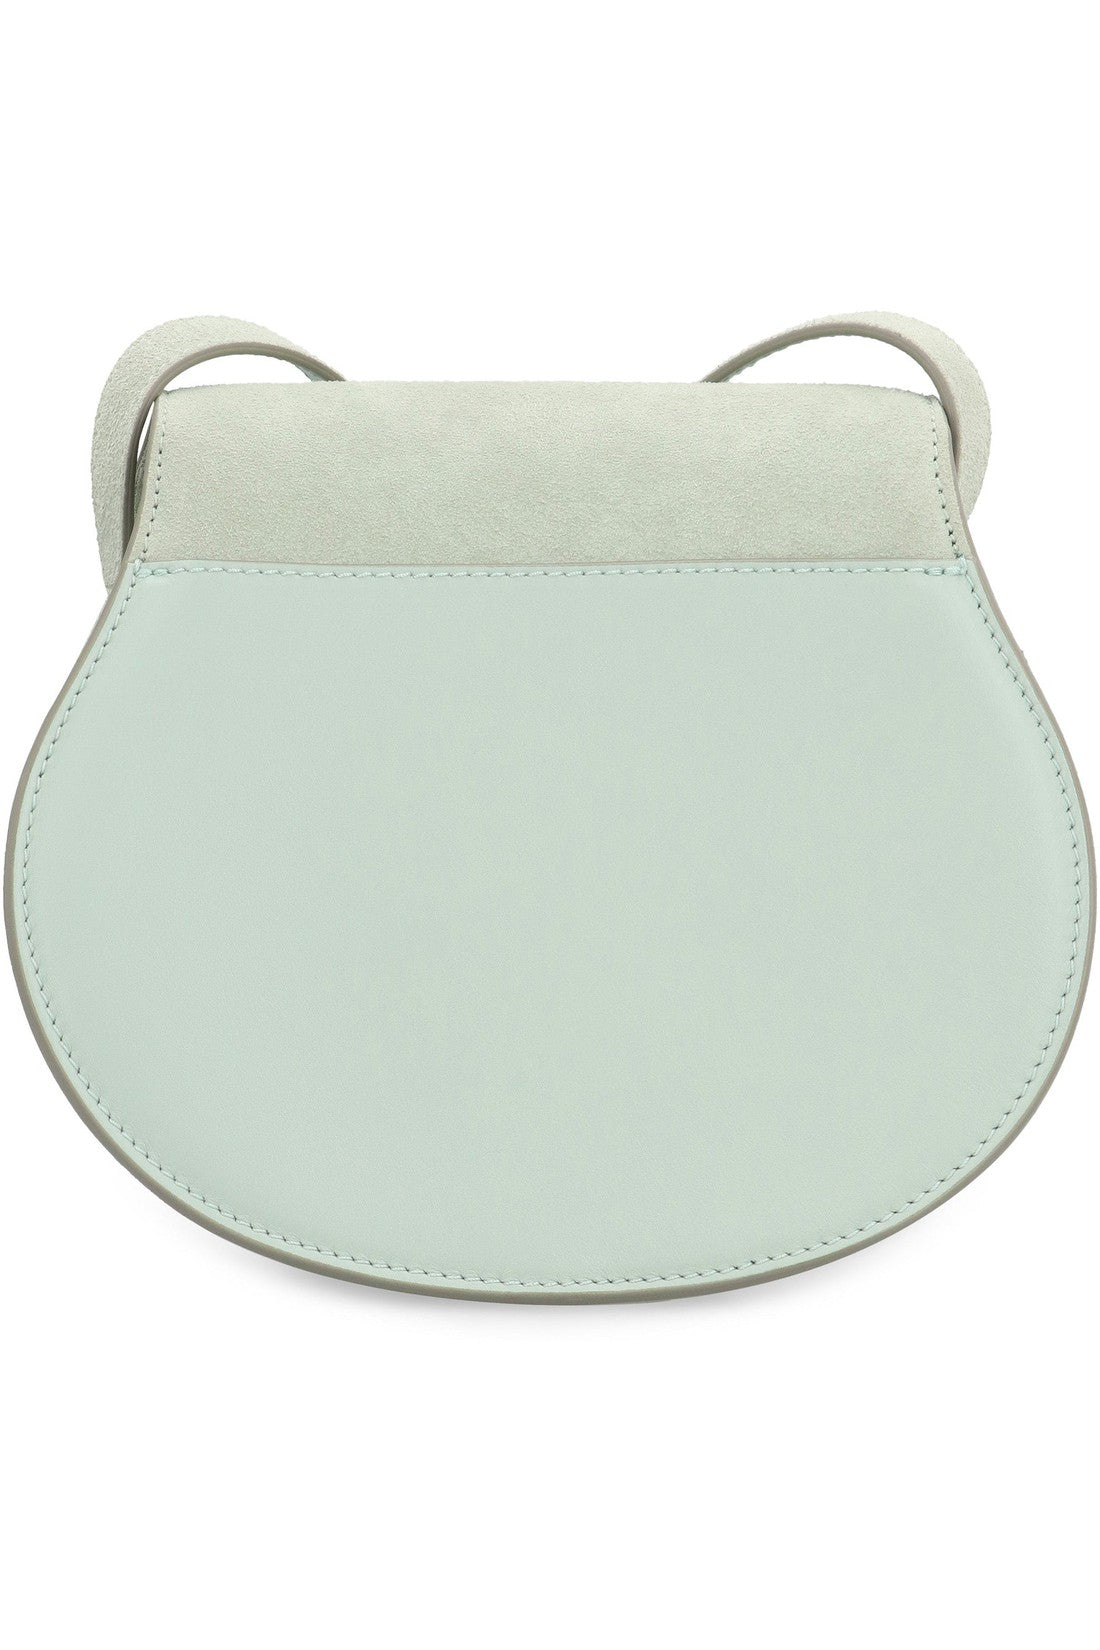 Chloé-OUTLET-SALE-Marcie leather saddle bag-ARCHIVIST